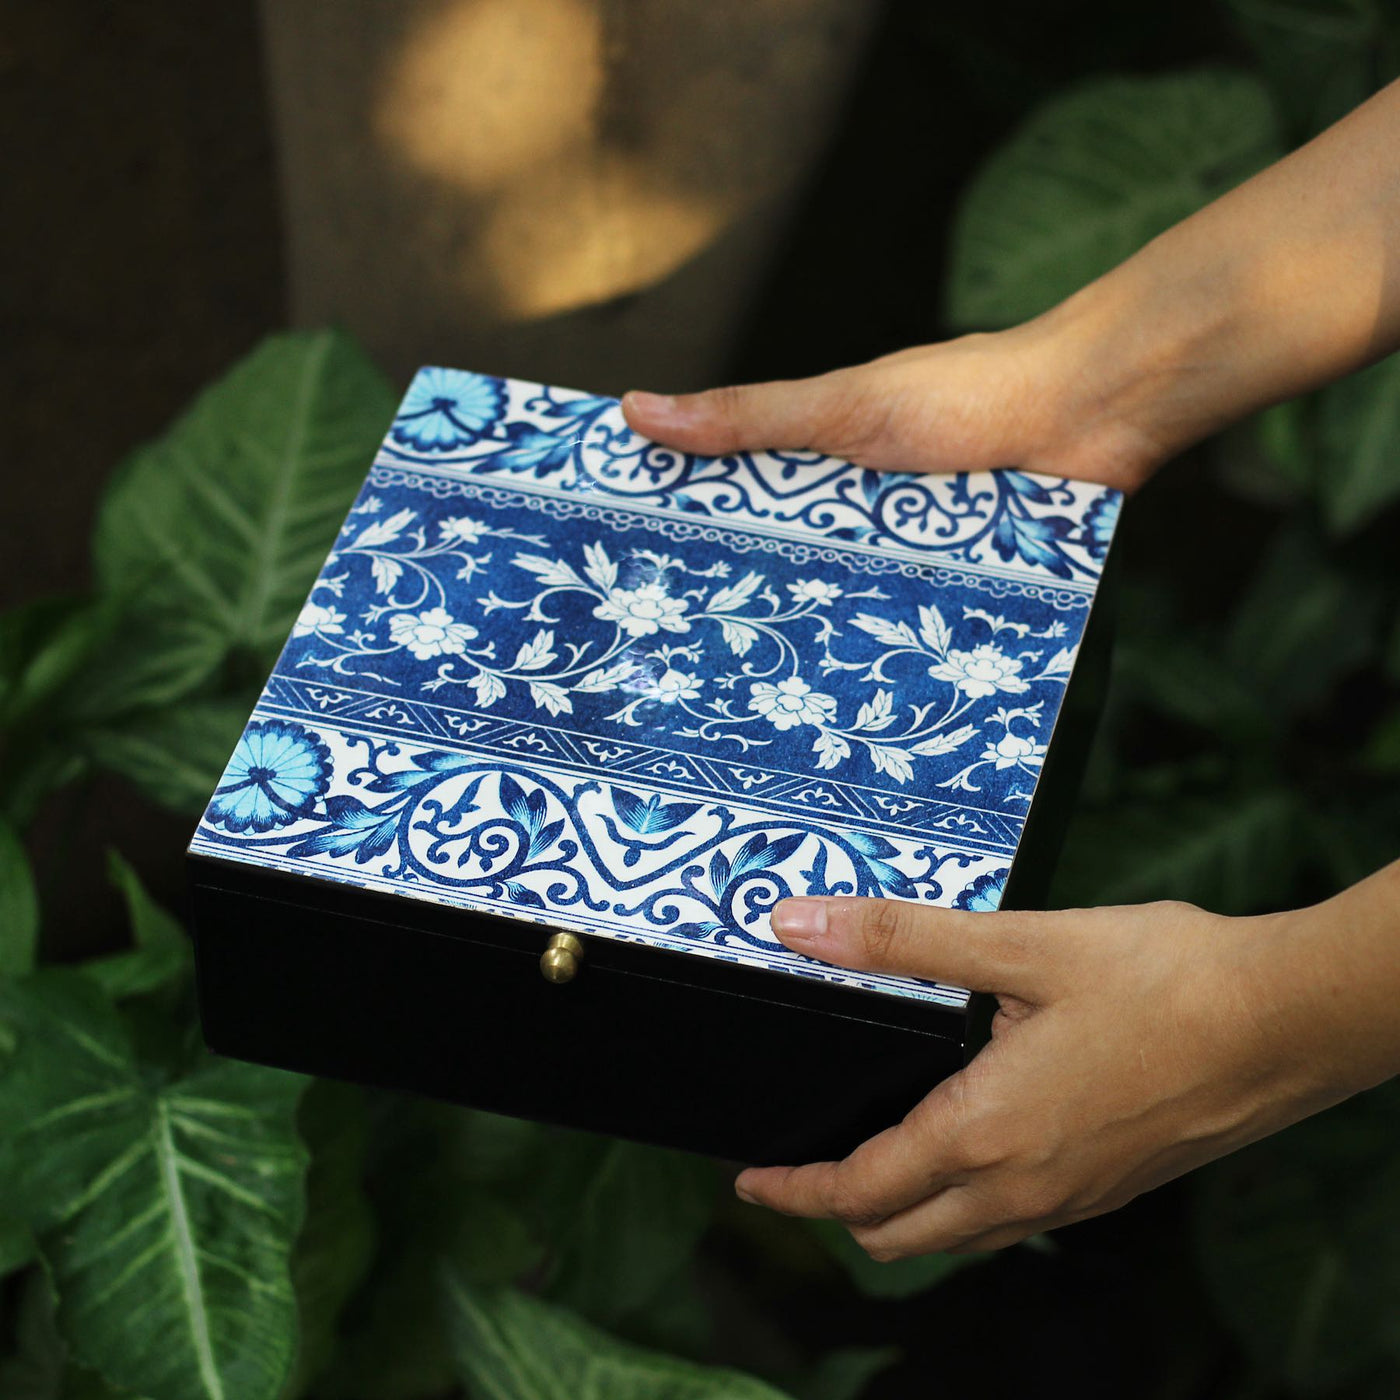 Blue & White Gift Box